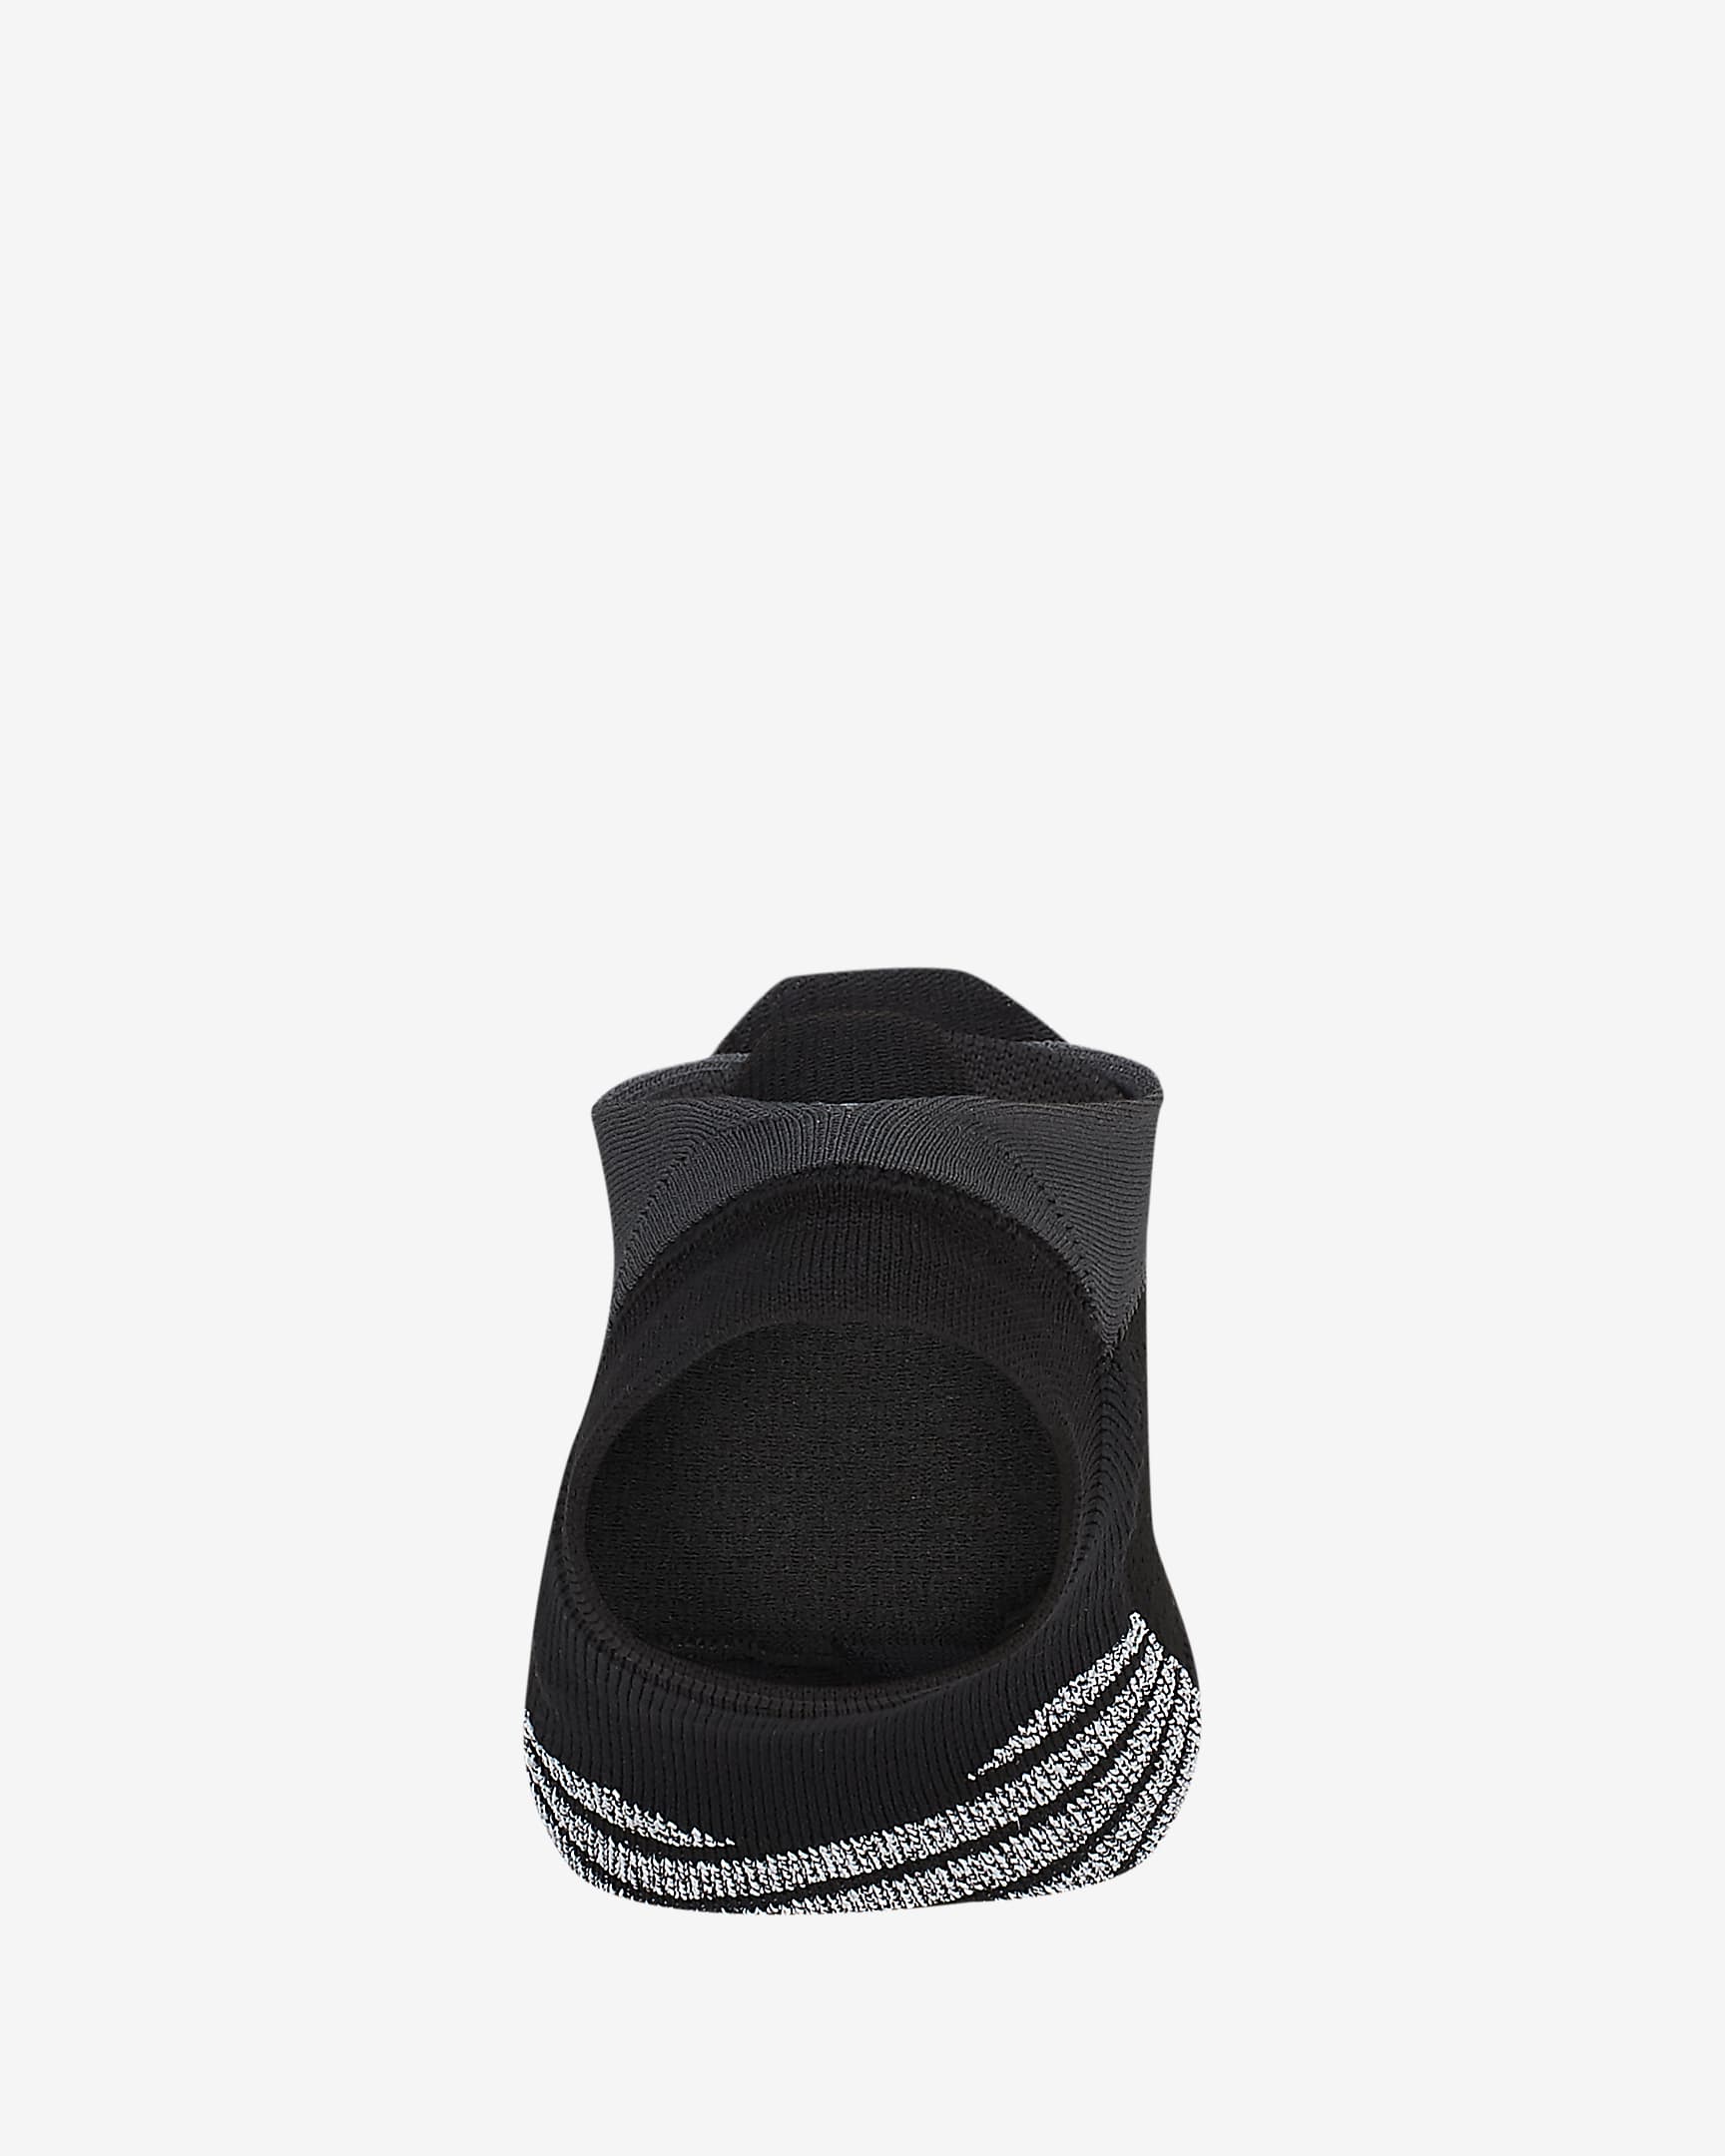 NikeGrip Dri-FIT Studio teenloze sokken voor dames - Zwart/Anthracite